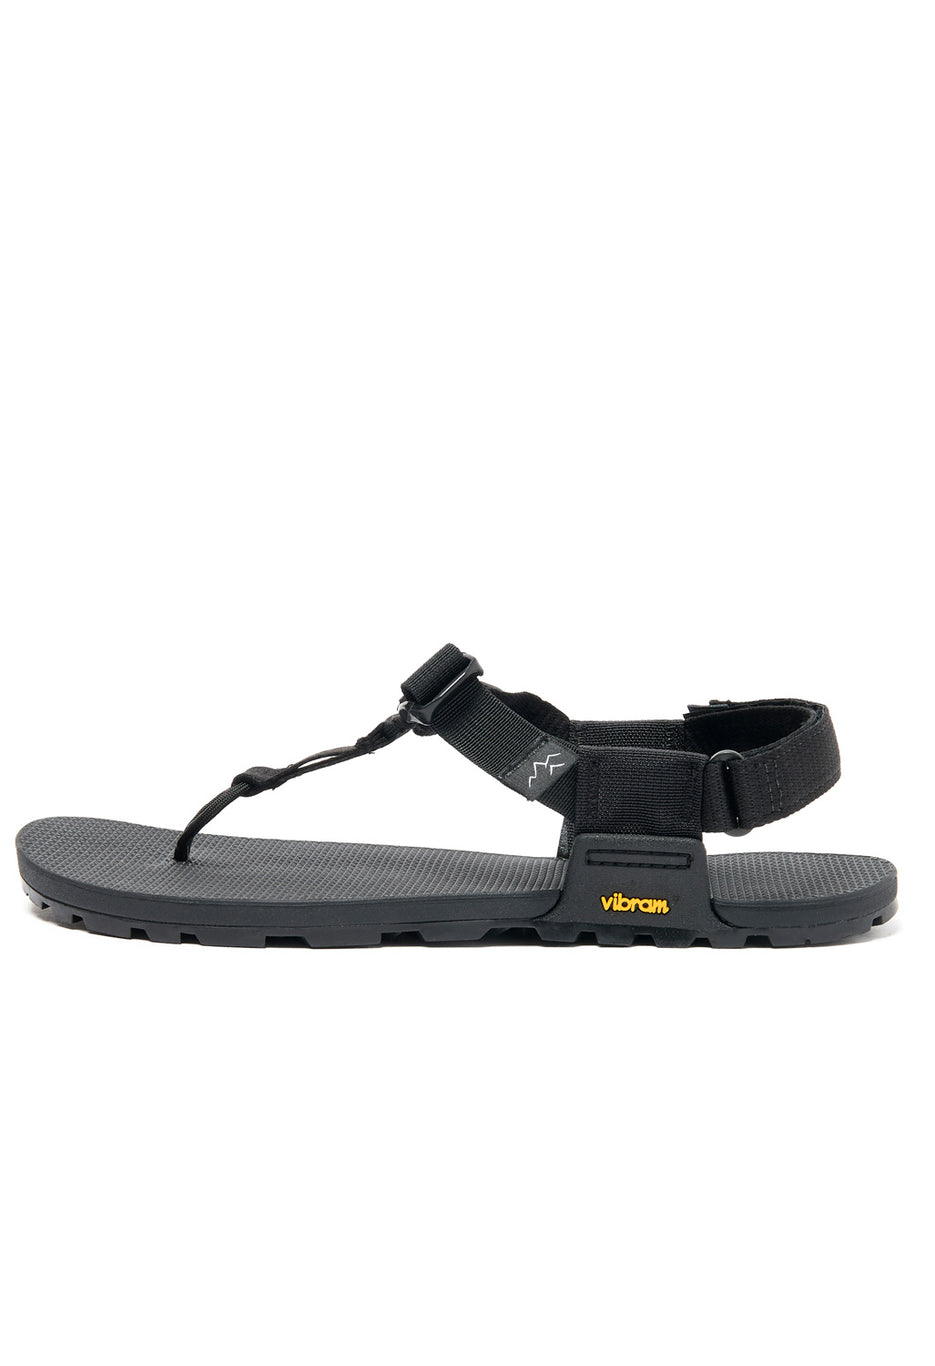 Bedrock Sandals Cairn Evo Sandals - Black